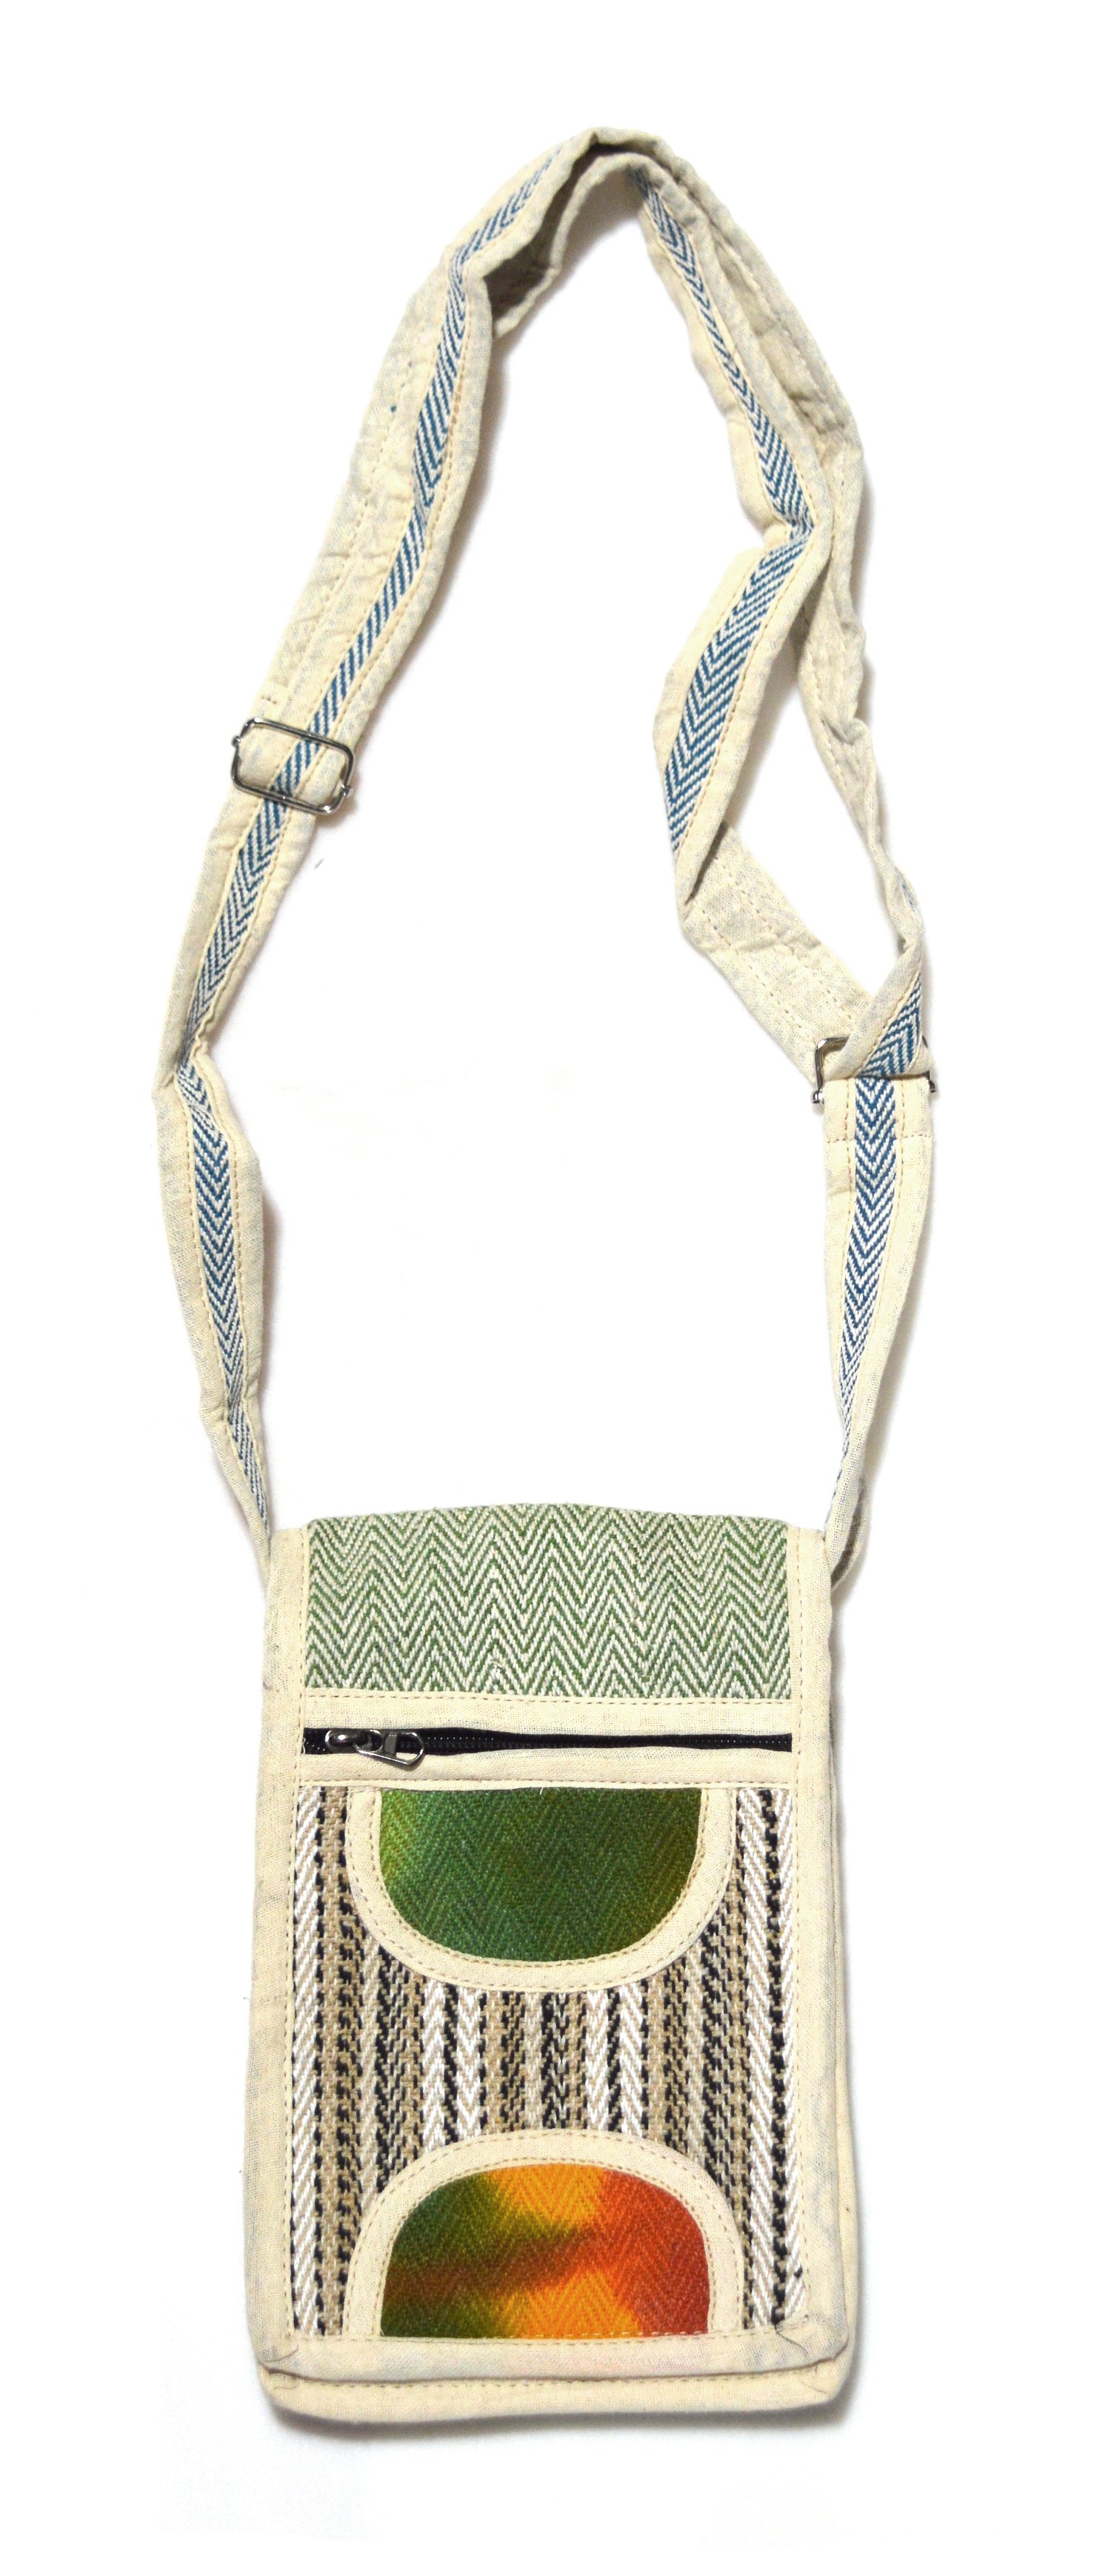 Купить Сумка на плечо бежево-зеленая с разноцветными вставками (15 х 22 см) в интернет-магазине Ариаварта